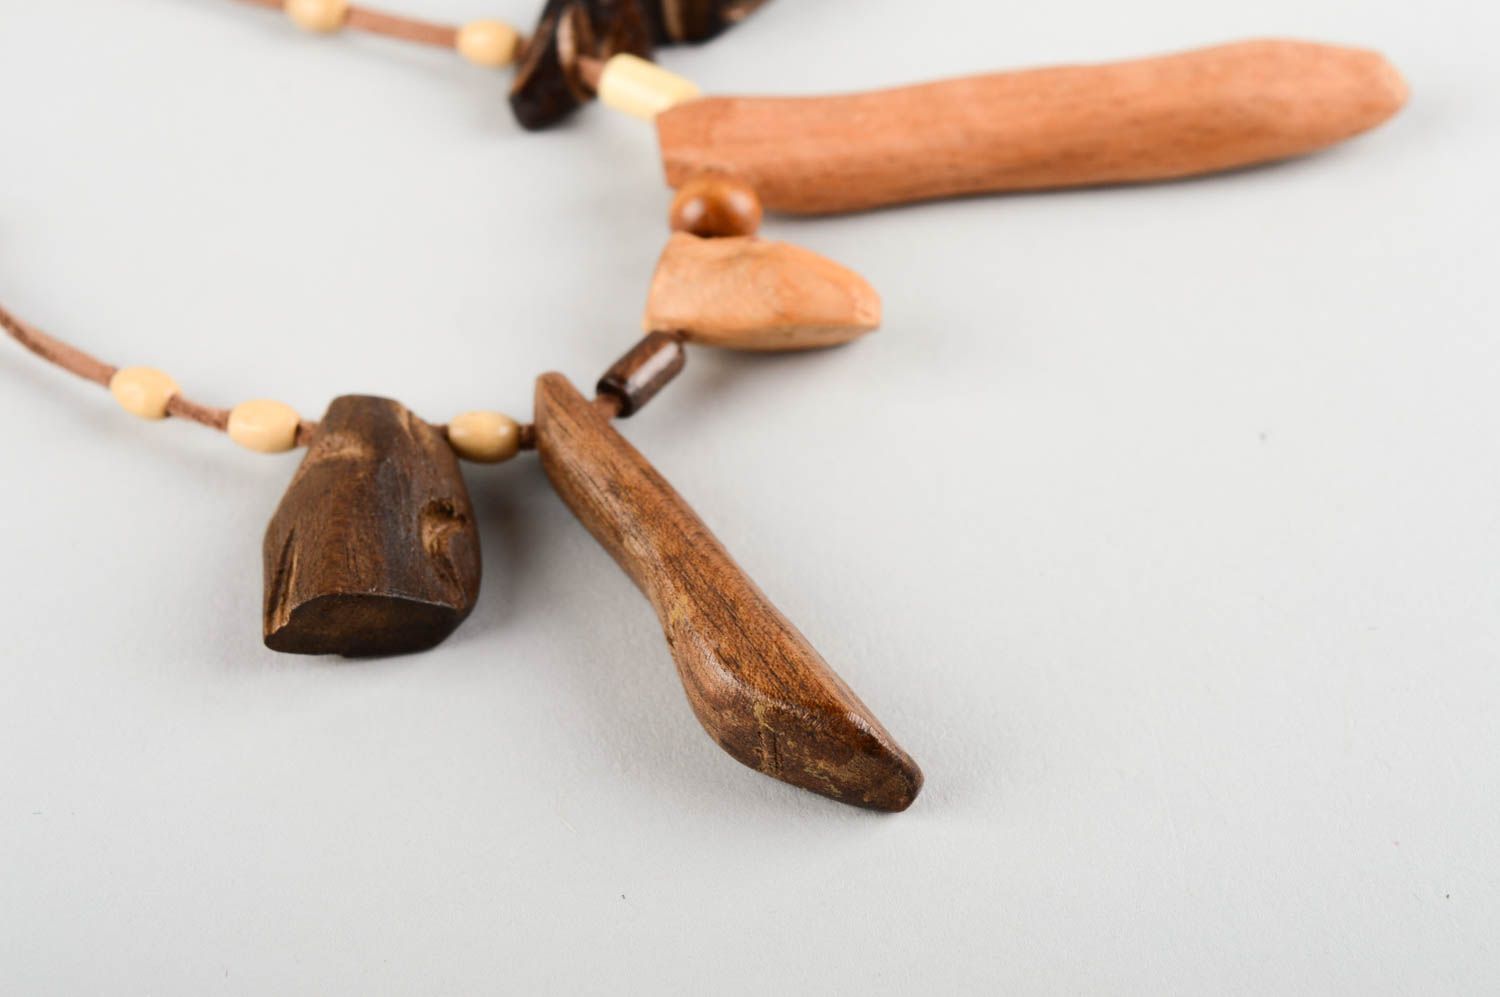 Кулон ручной работы украшение на шею авторский аксессуар из дерева ореха и бука фото 3